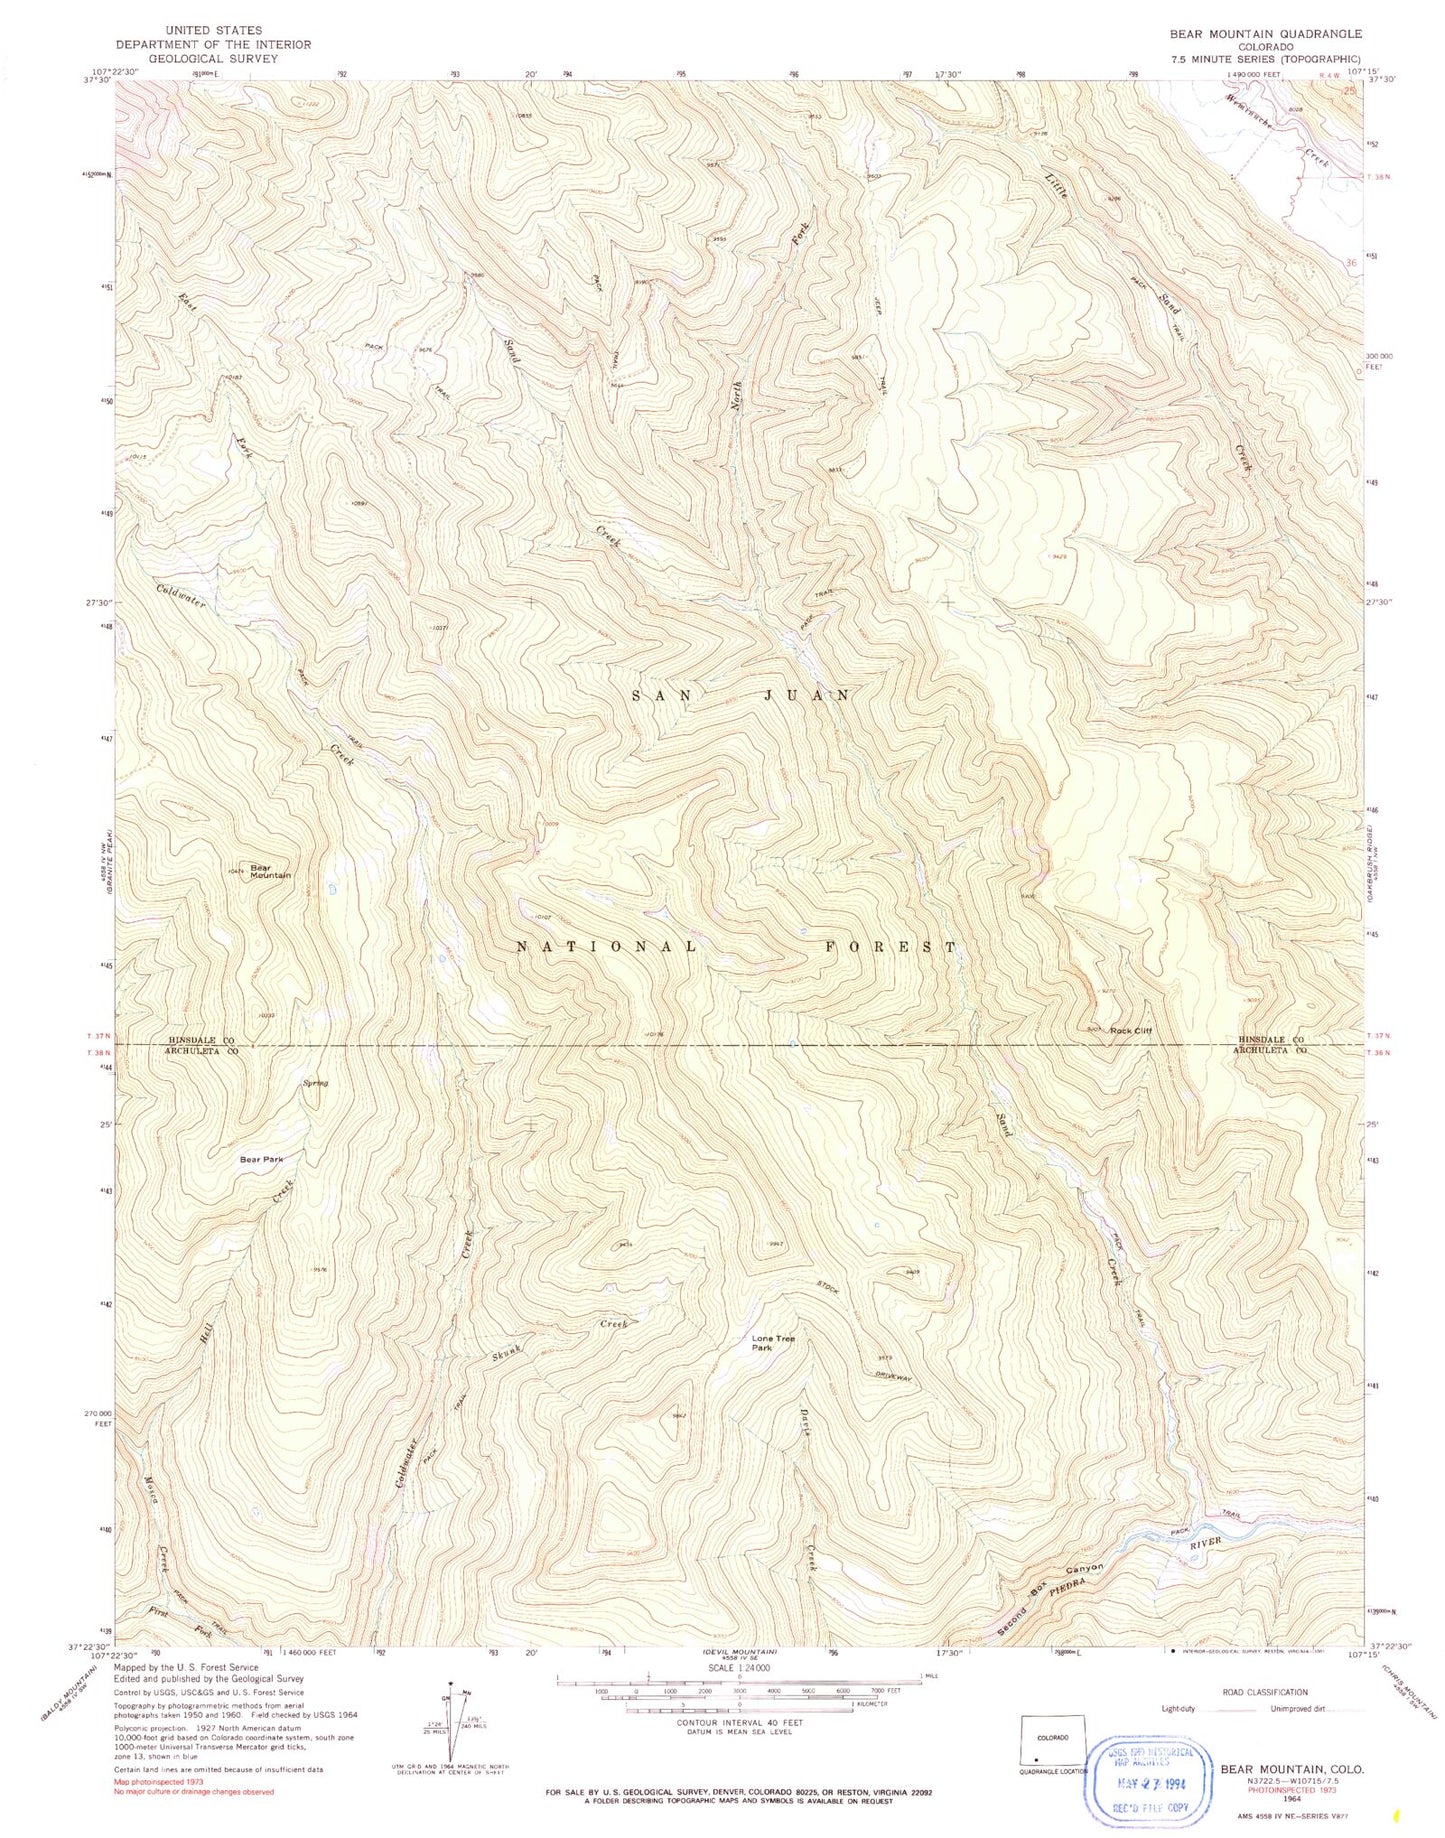 USGS Classic Bear Mountain Colorado 7.5'x7.5' Topo Map Image